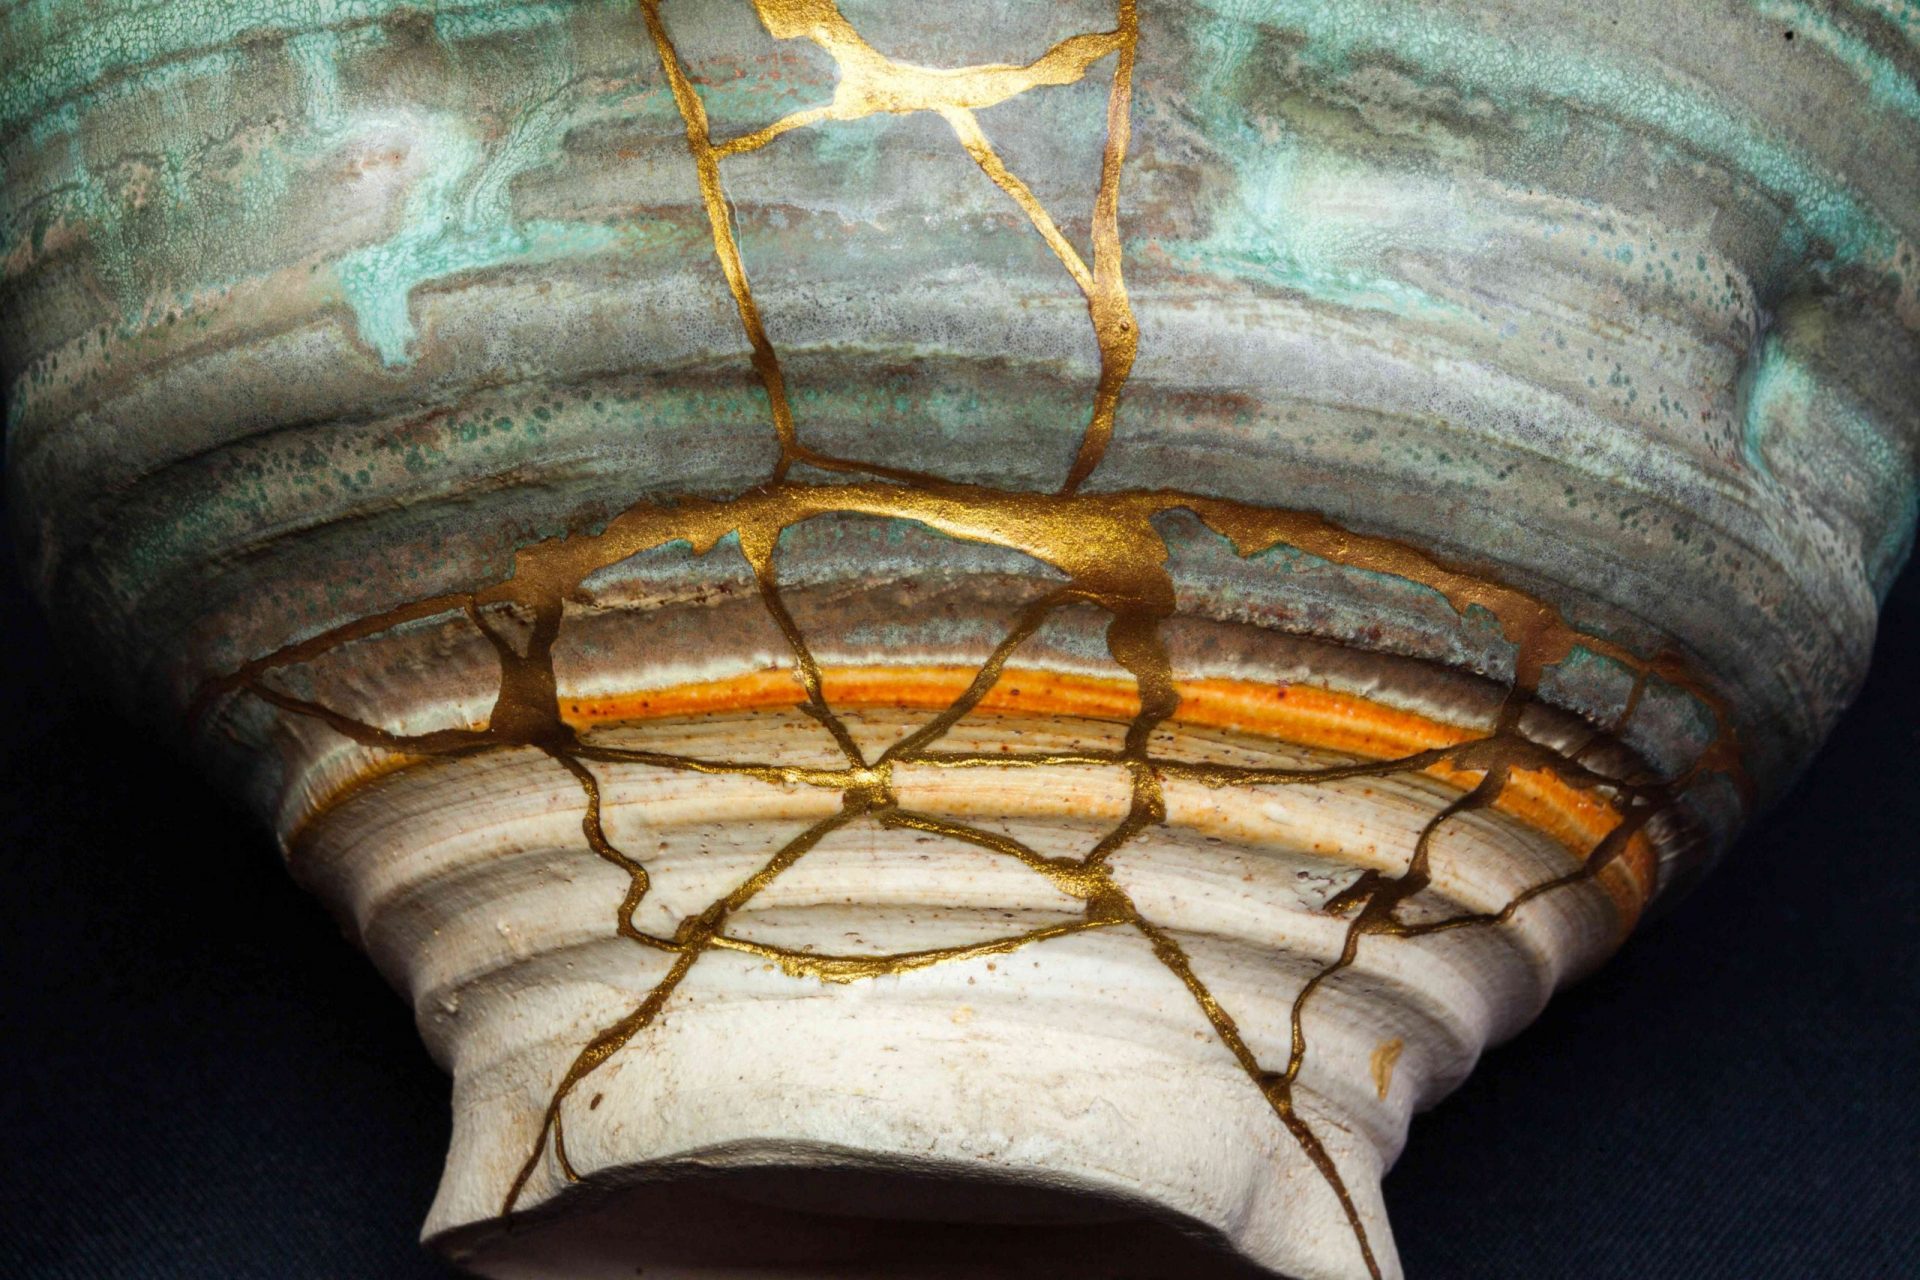 Una pieza de cerámica que ha sido reparada con la forma de arte kintsugi utilizando laca y oro